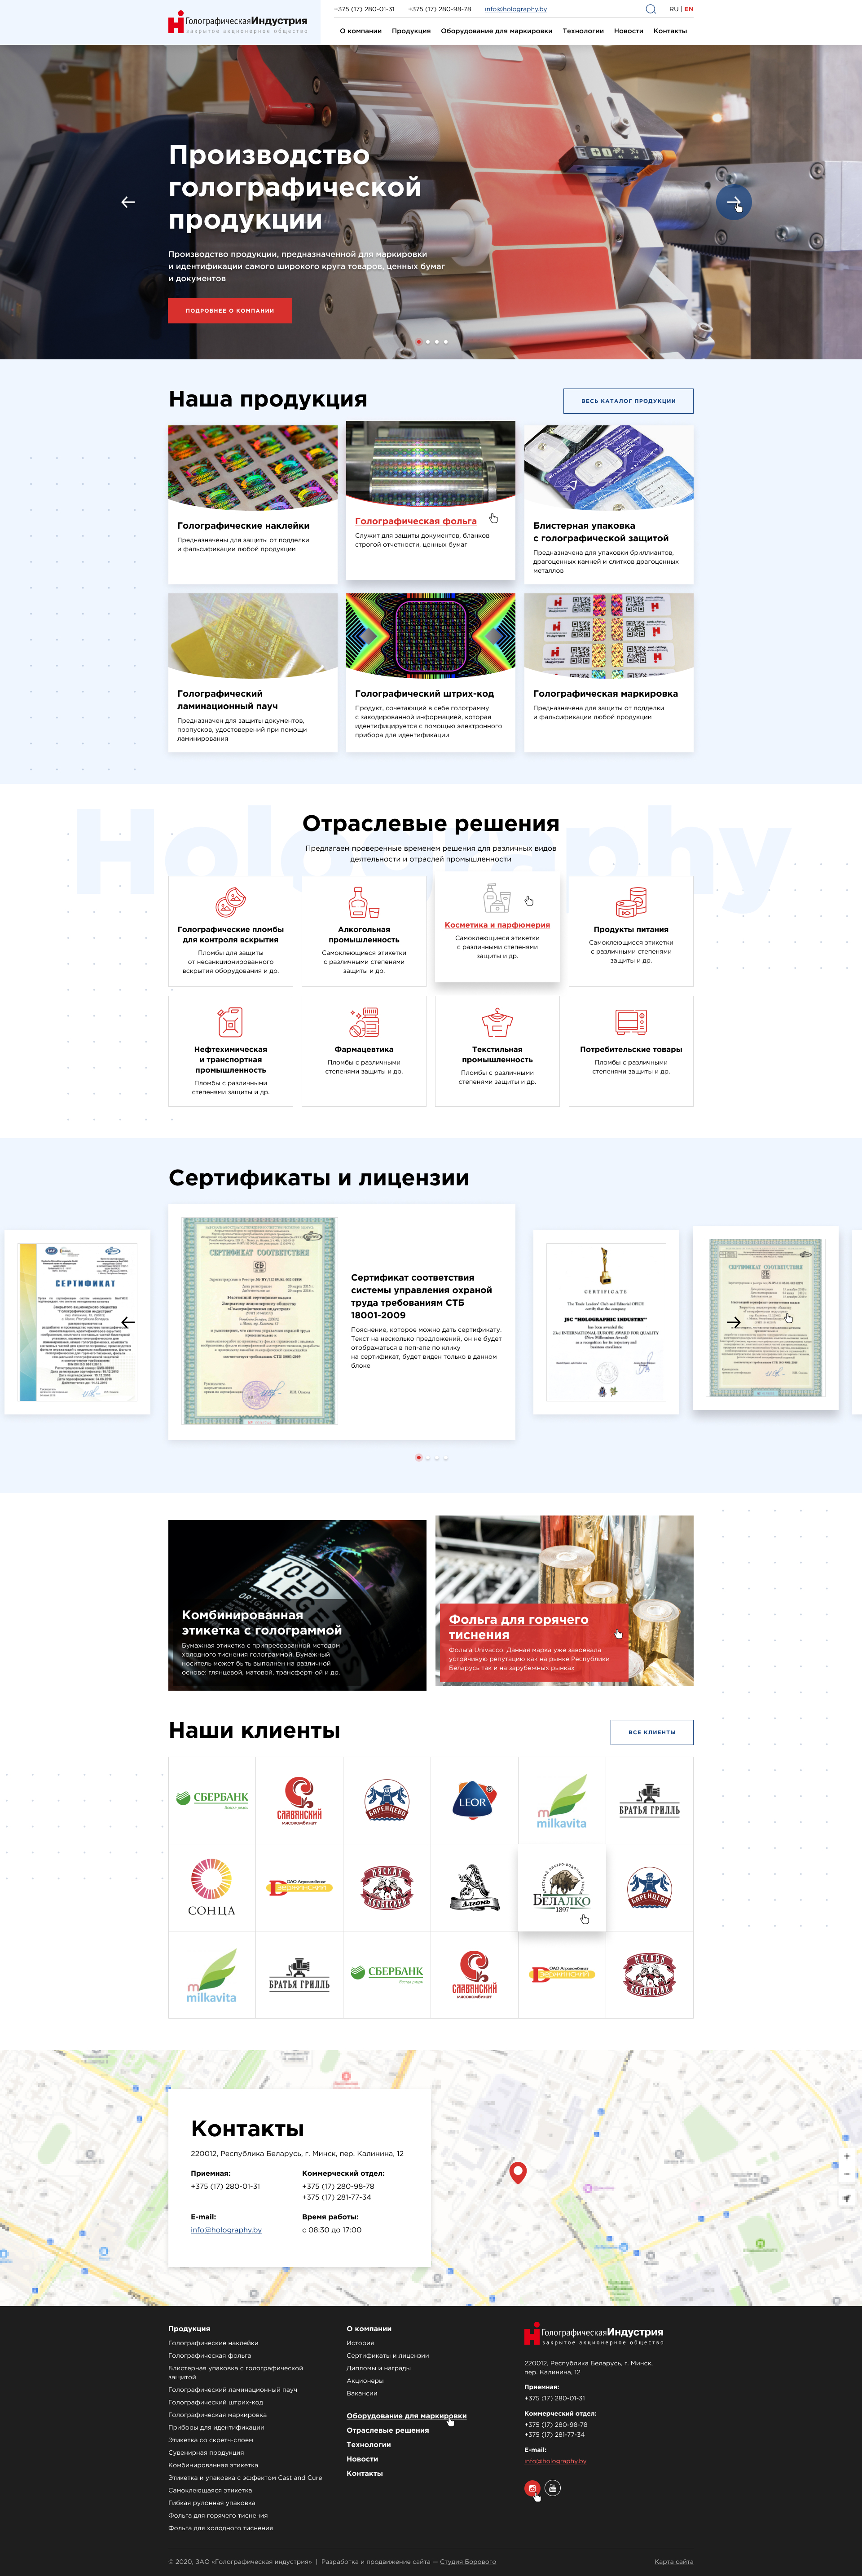 корпоративный сайт для крупнейшего производителя голографической продукции в беларуси зао «голографическая индустрия»